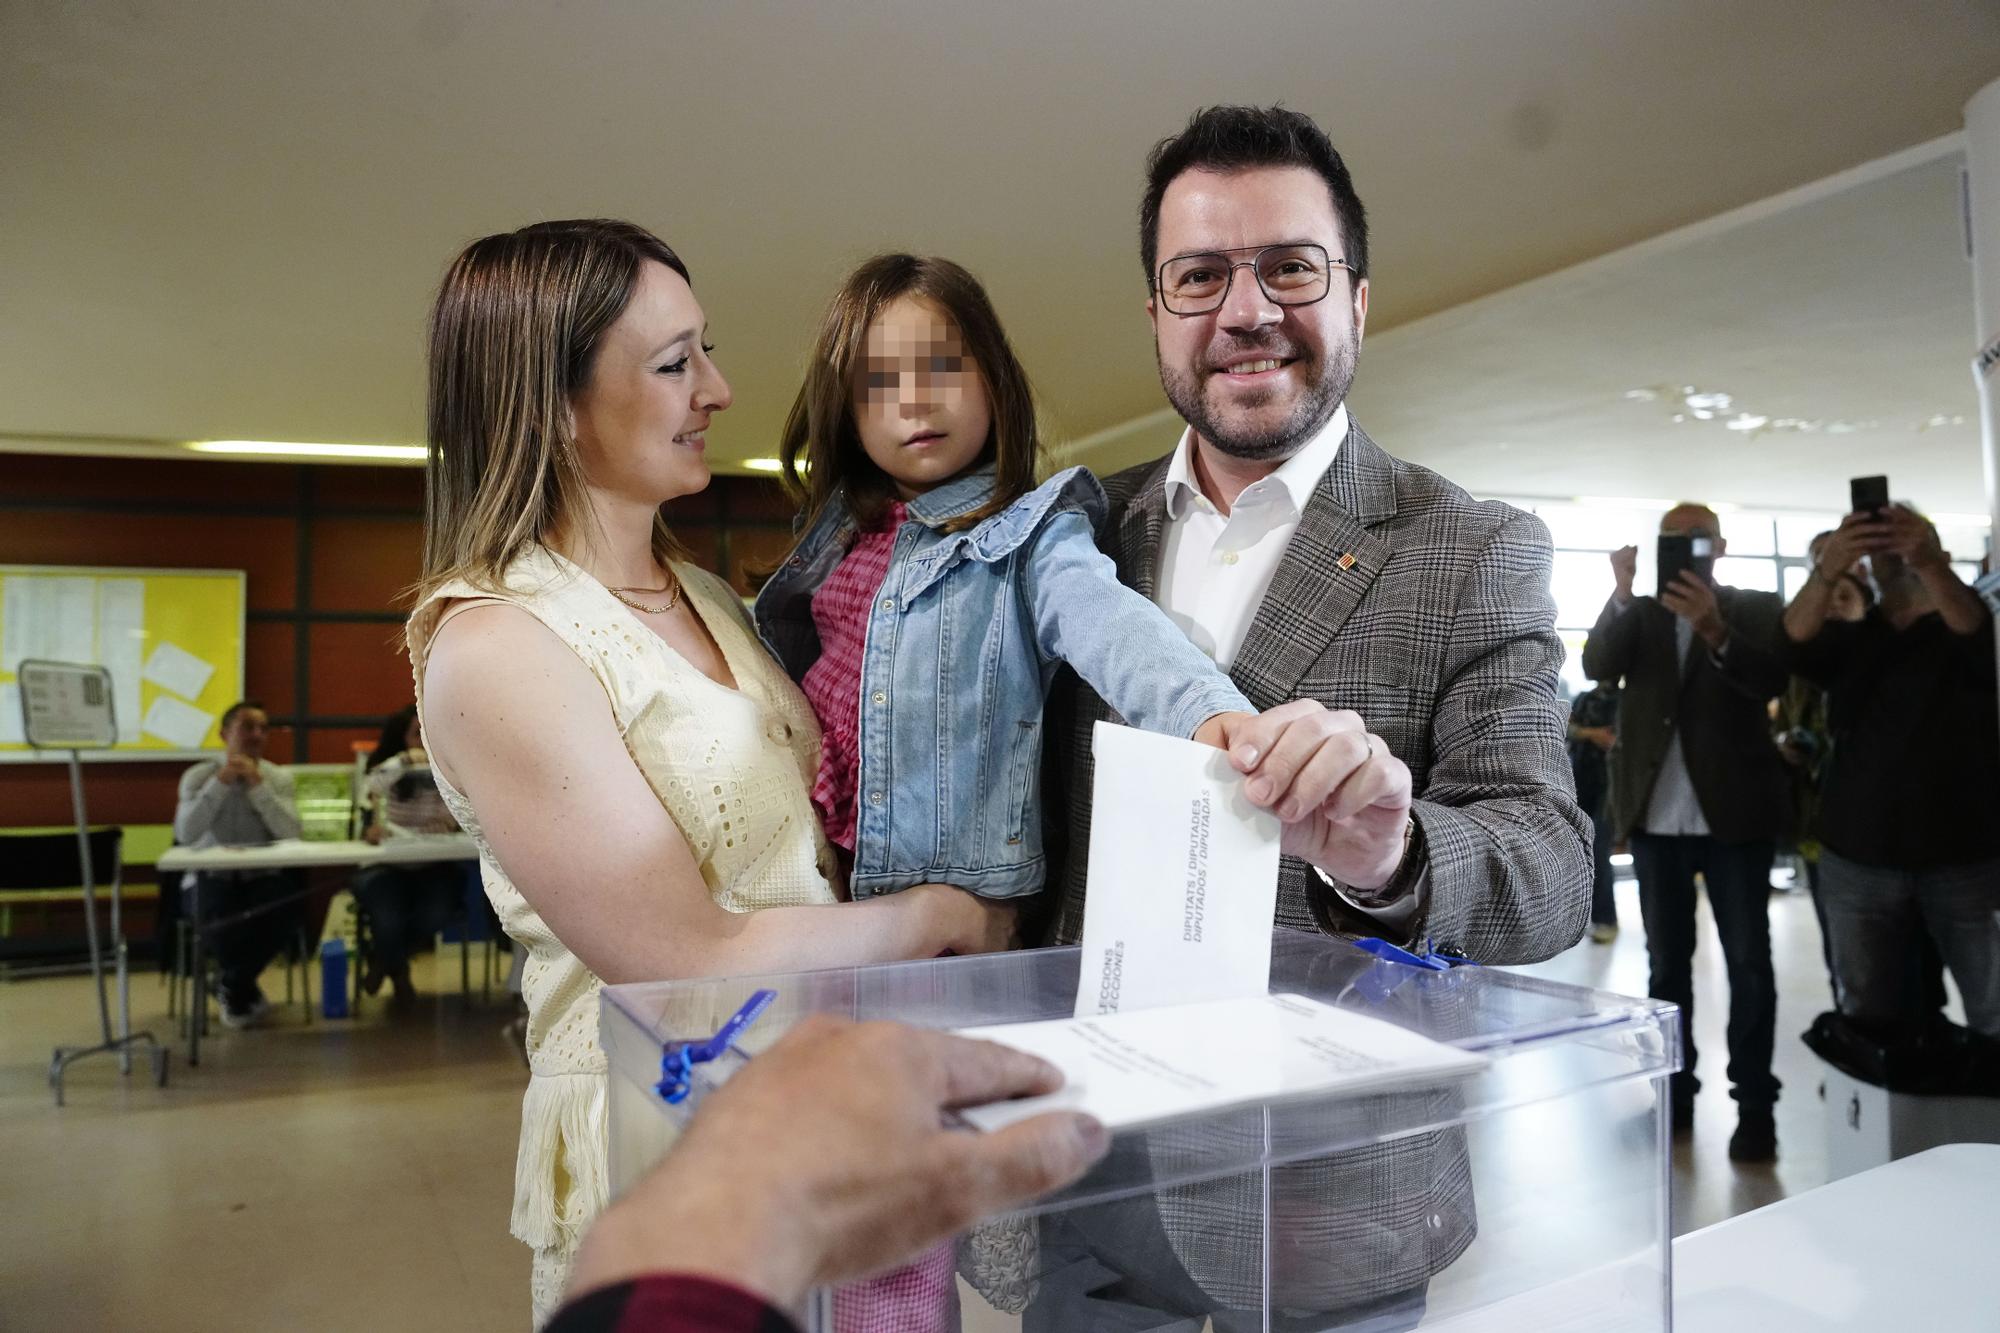 Jornada electoral en Cataluña. Votación de Pere Aragonès